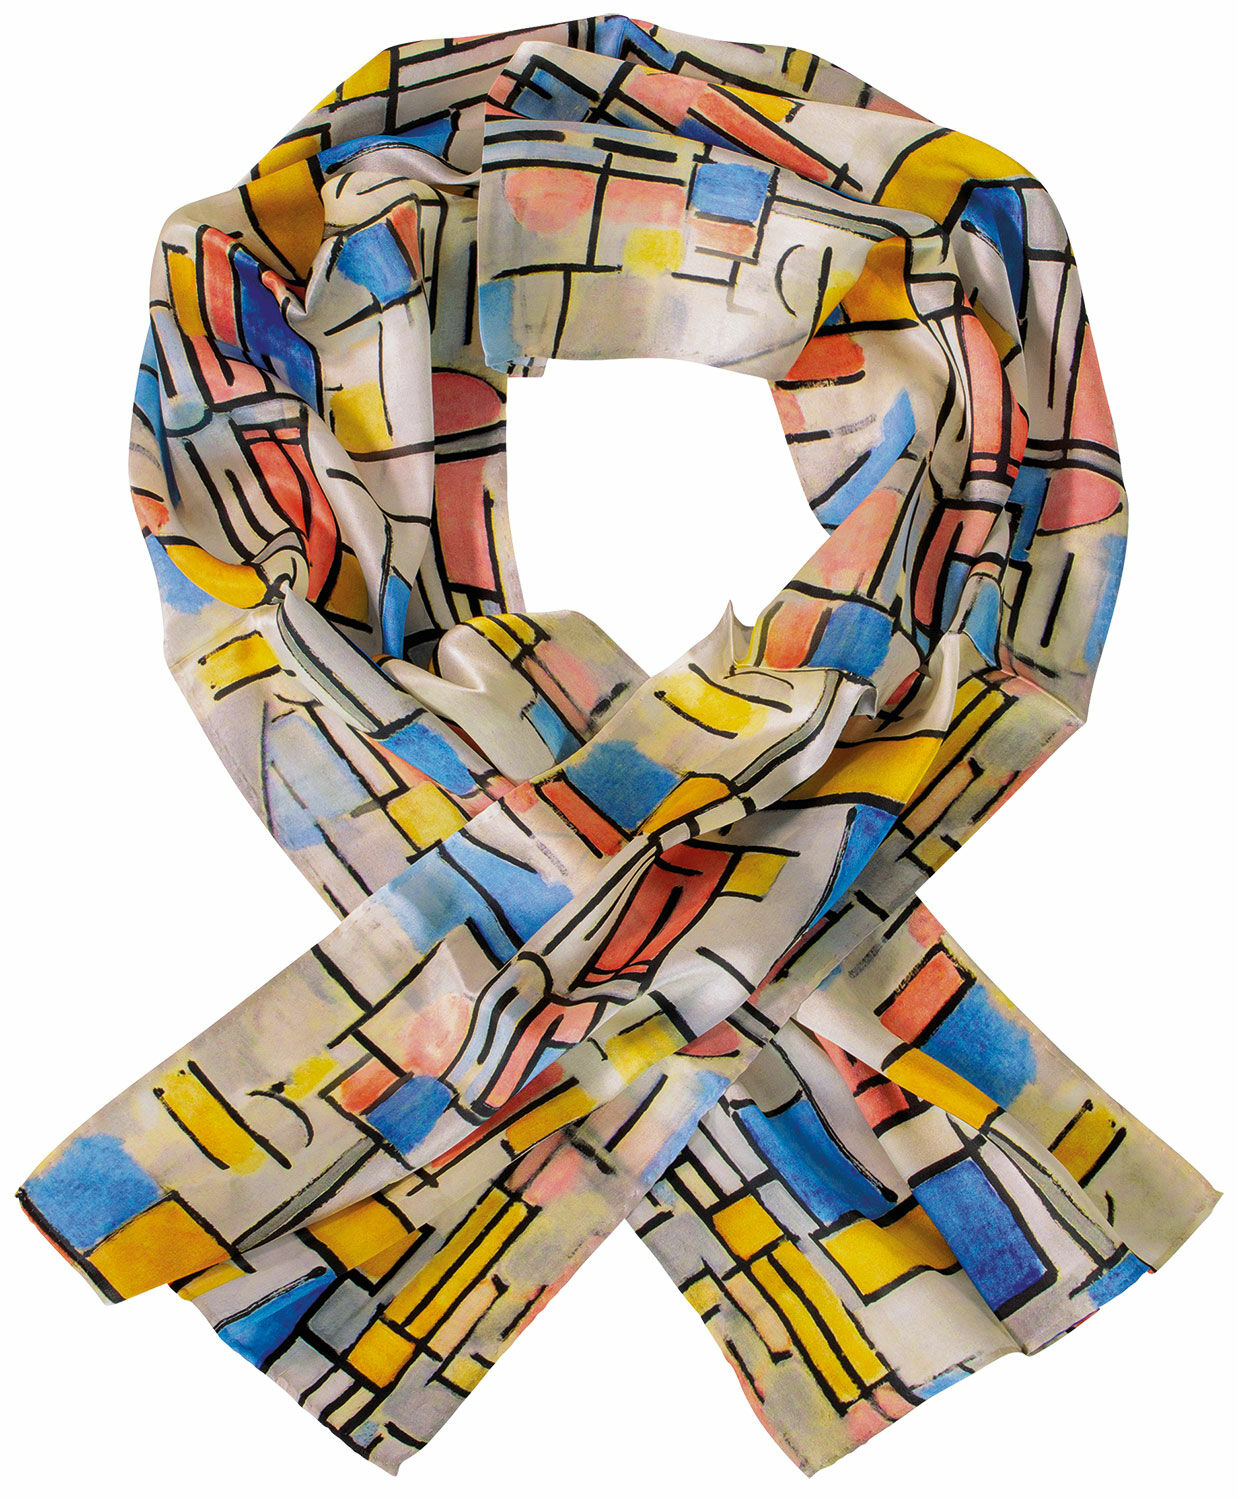 Zijden sjaal "Compositie in ovaal met kleurvlakken 1" von Piet Mondrian